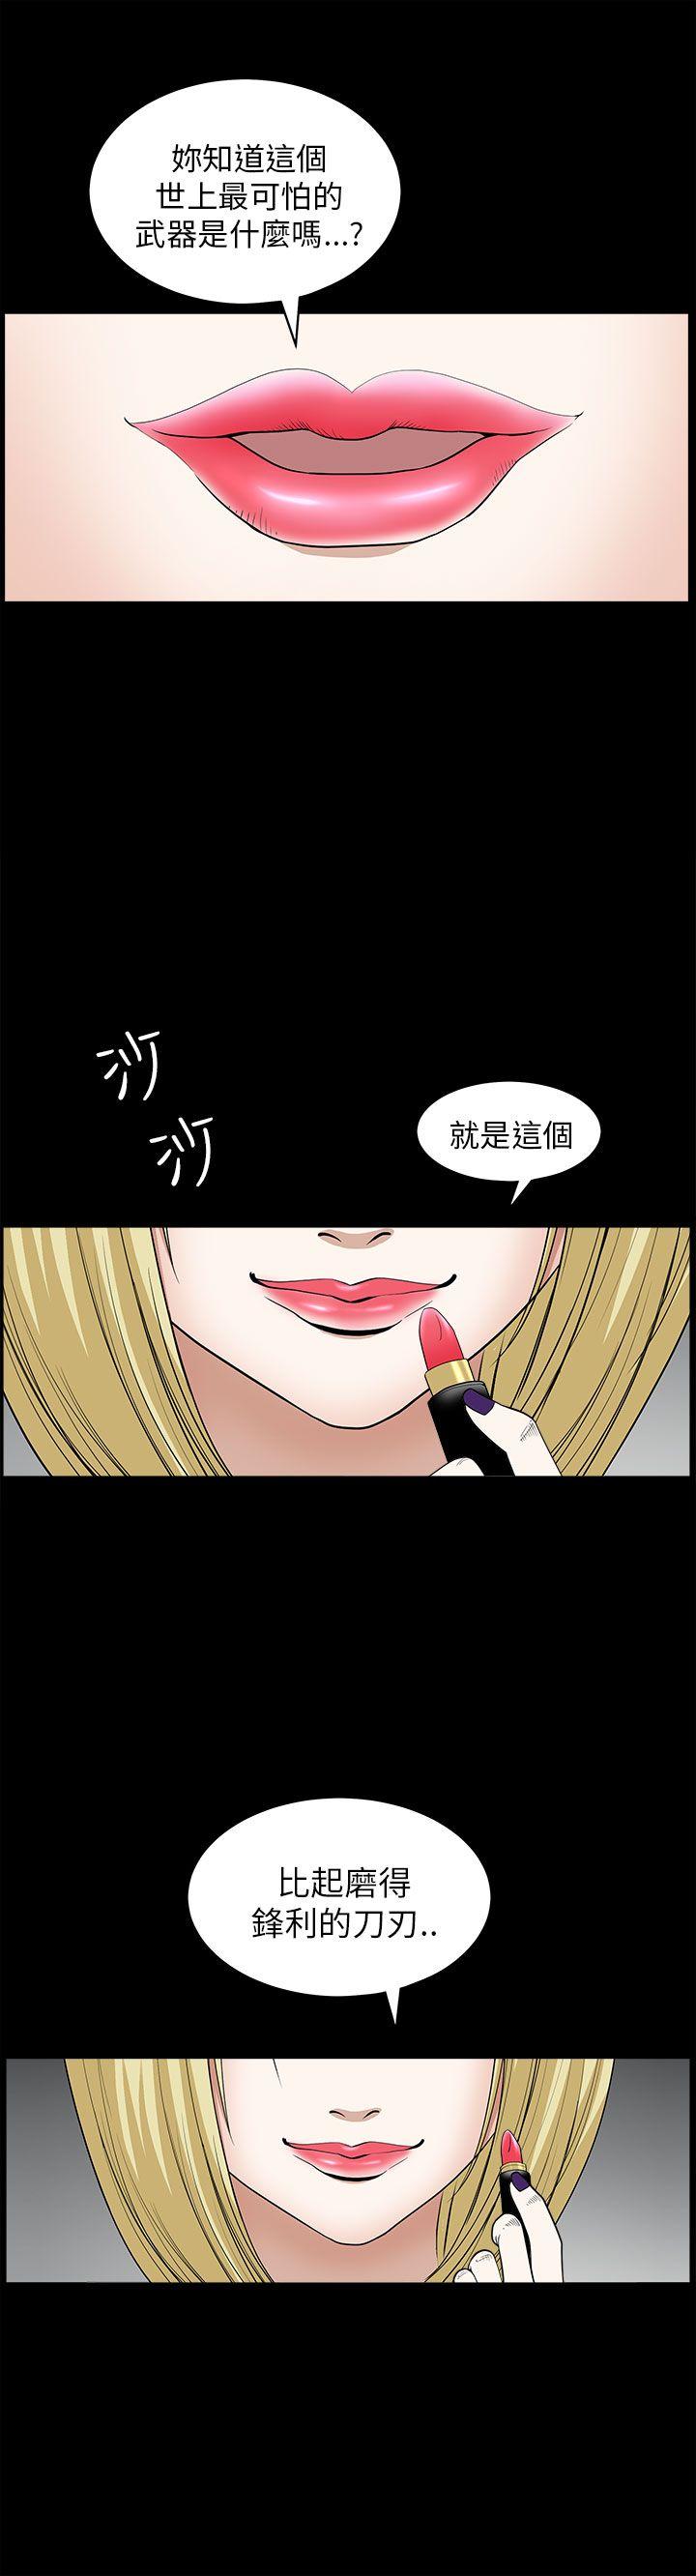 韩国污漫画 煦娜 第8话 28